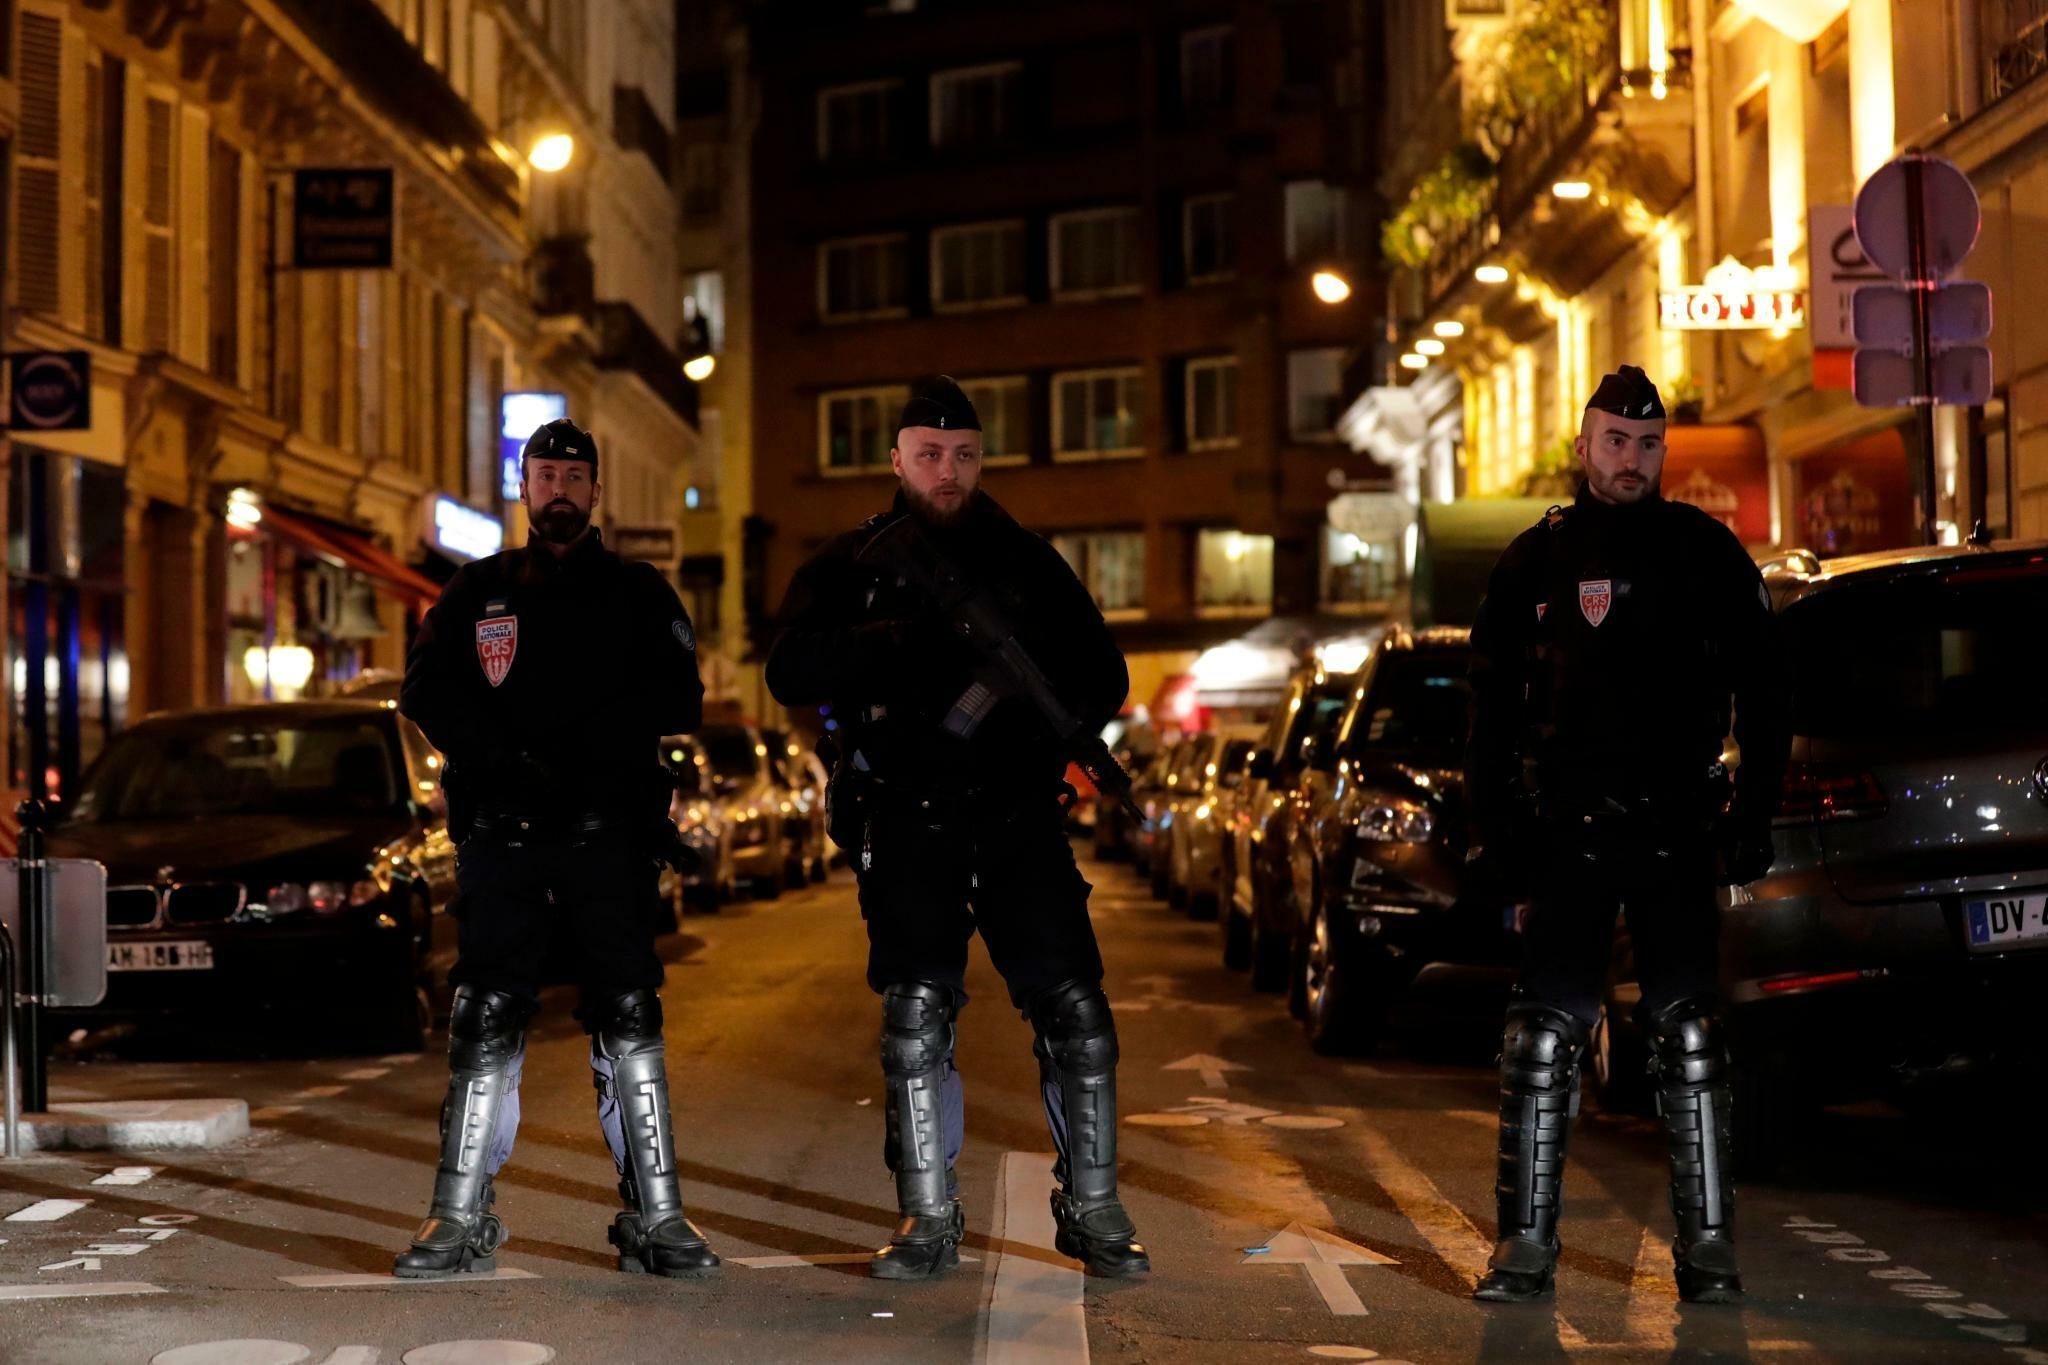 مكافحة الإرهاب ـ من هو منفذ عملية الطعن الإرهابية في فرنسا؟